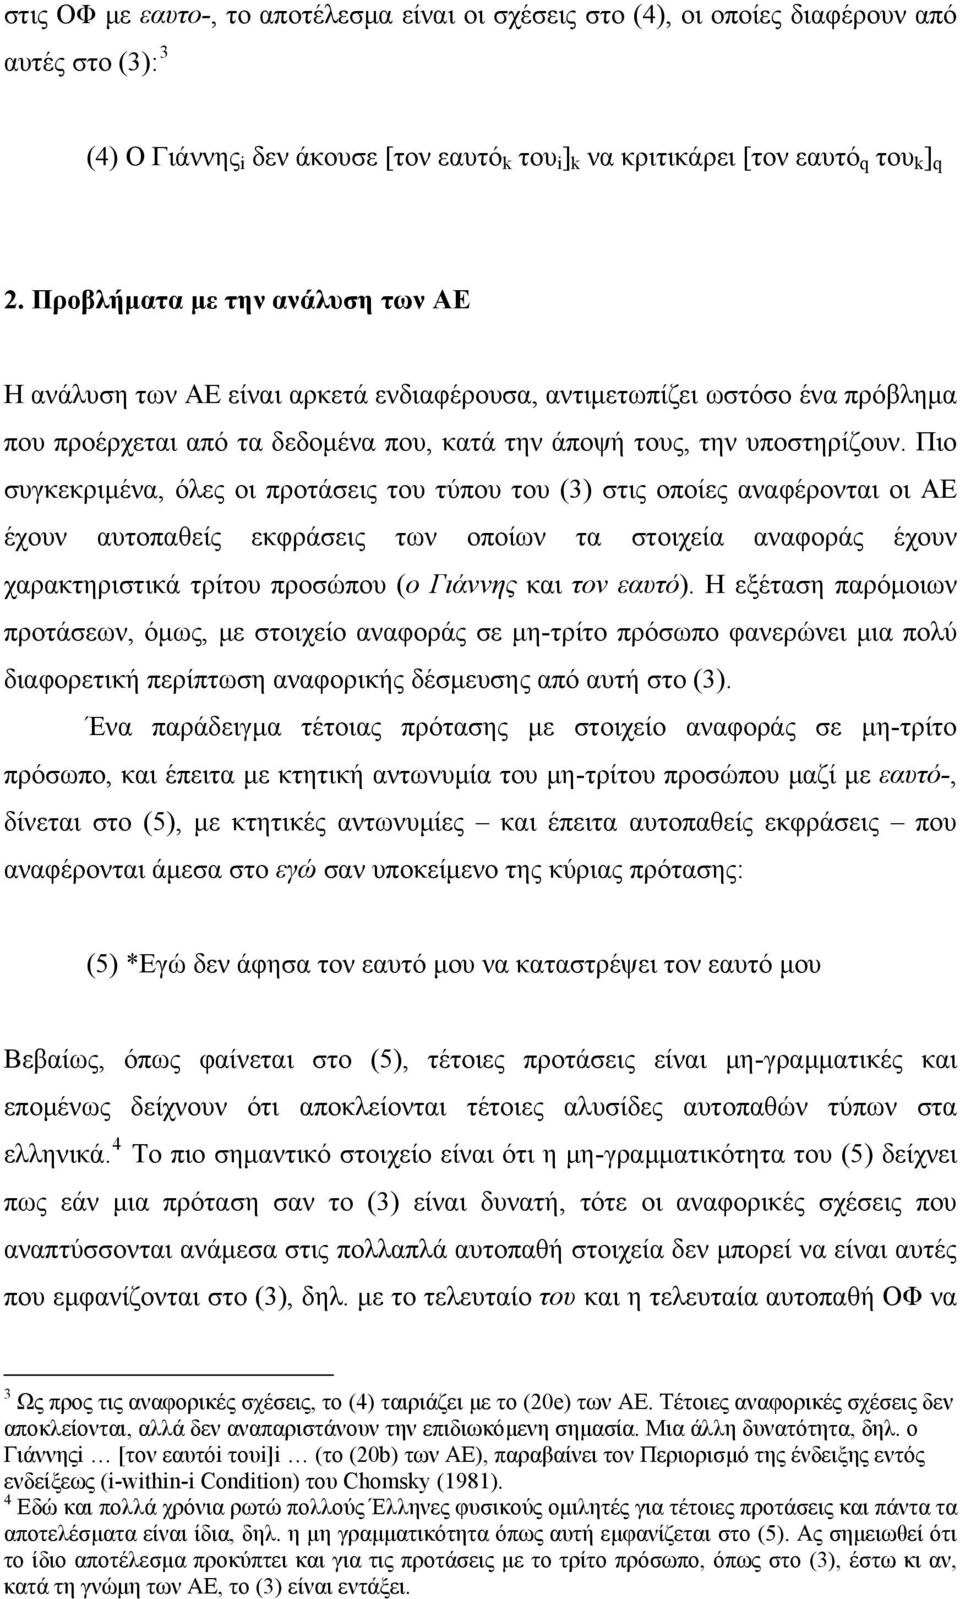 Πιο συγκεκριμένα, όλες οι προτάσεις του τύπου του (3) στις οποίες αναφέρονται οι AE έχουν αυτοπαθείς εκφράσεις των οποίων τα στοιχεία αναφοράς έχουν χαρακτηριστικά τρίτου προσώπου (ο Γιάννης και τον